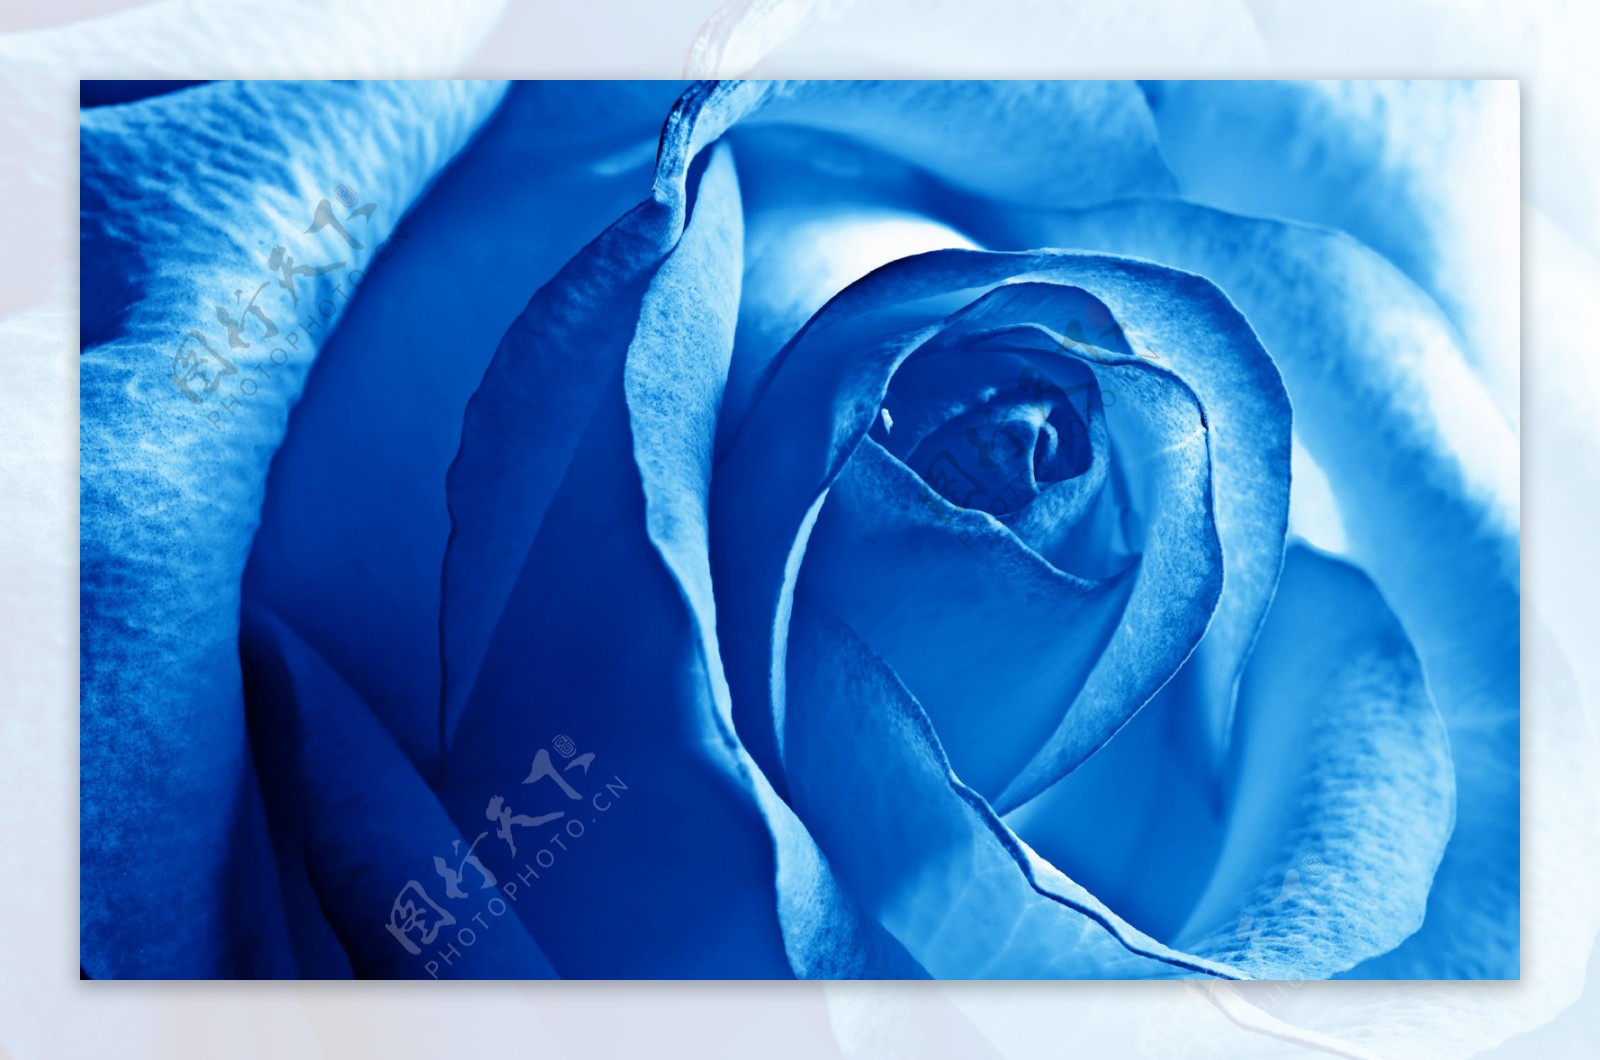 蓝色妖姬唯美爱情高清壁纸图片下载-植物壁纸-壁纸下载-美桌网